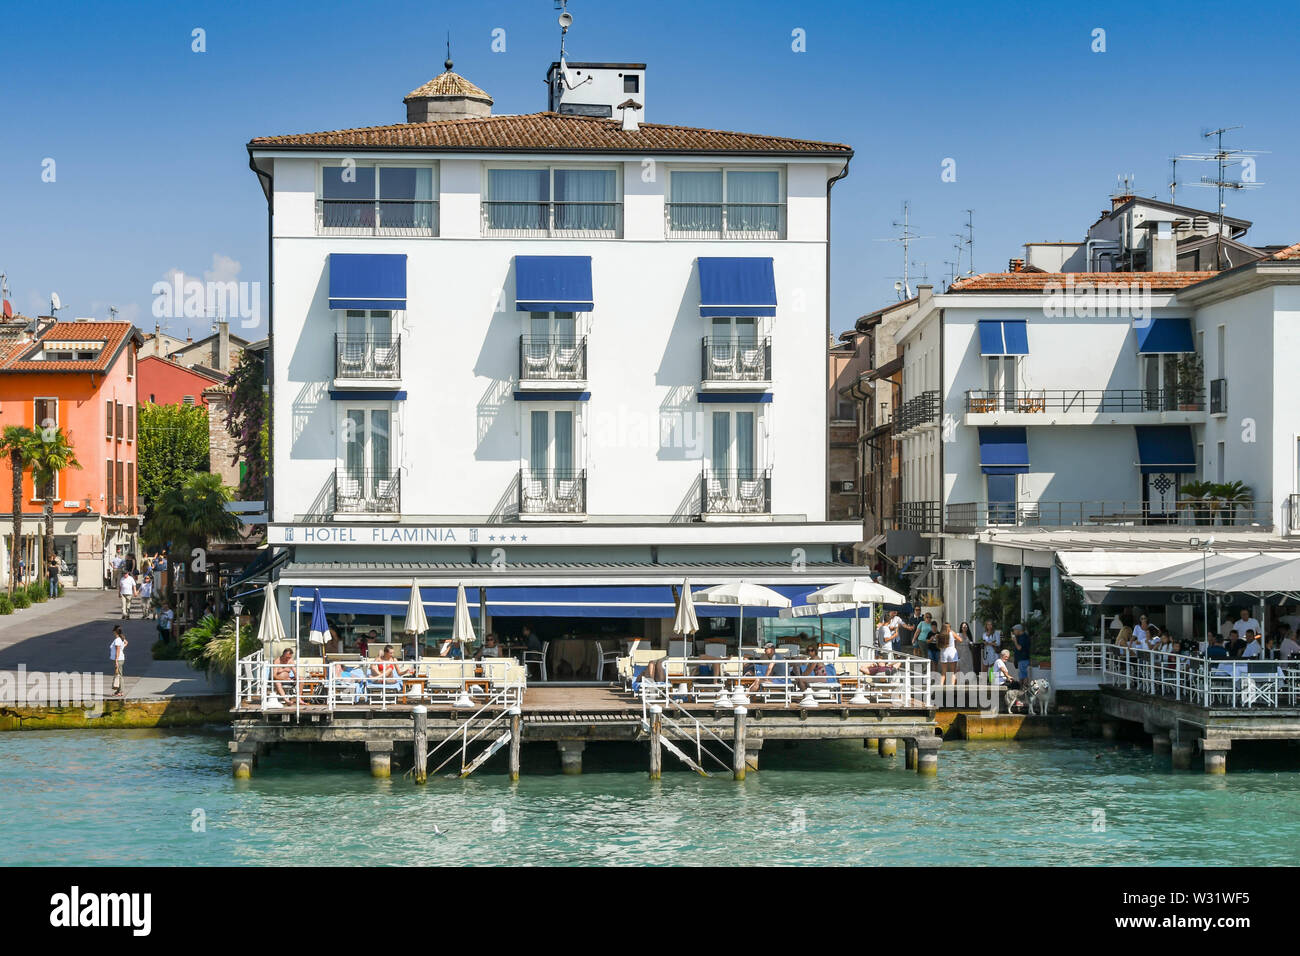 SIRMIONE SUL LAGO DI GARDA, Italia - Settembre 2018: Hotel Flaminia sulla riva del lago nella località di Sirmione sul Lago di Garda. Foto Stock